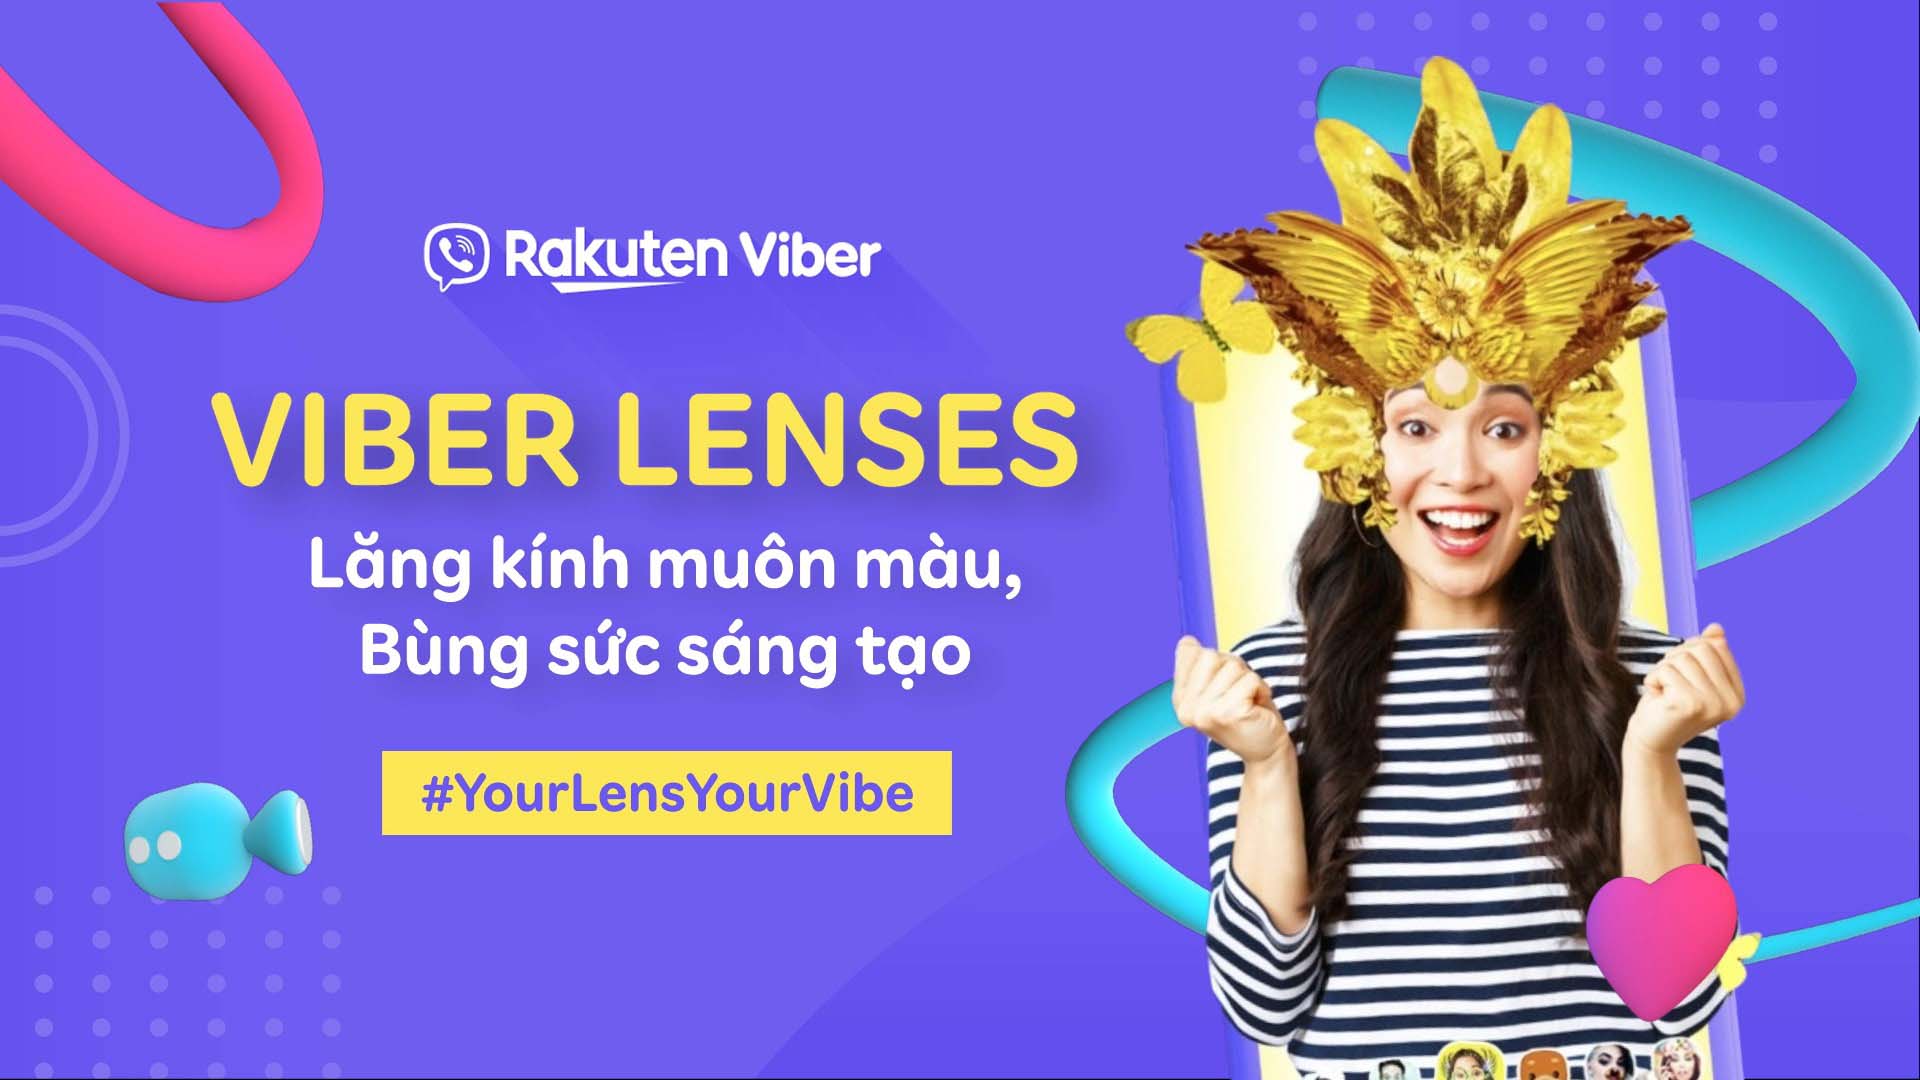 Rakuten Viber ra mắt tính năng Viber Lenses hoàn toàn mới tại Việt Nam